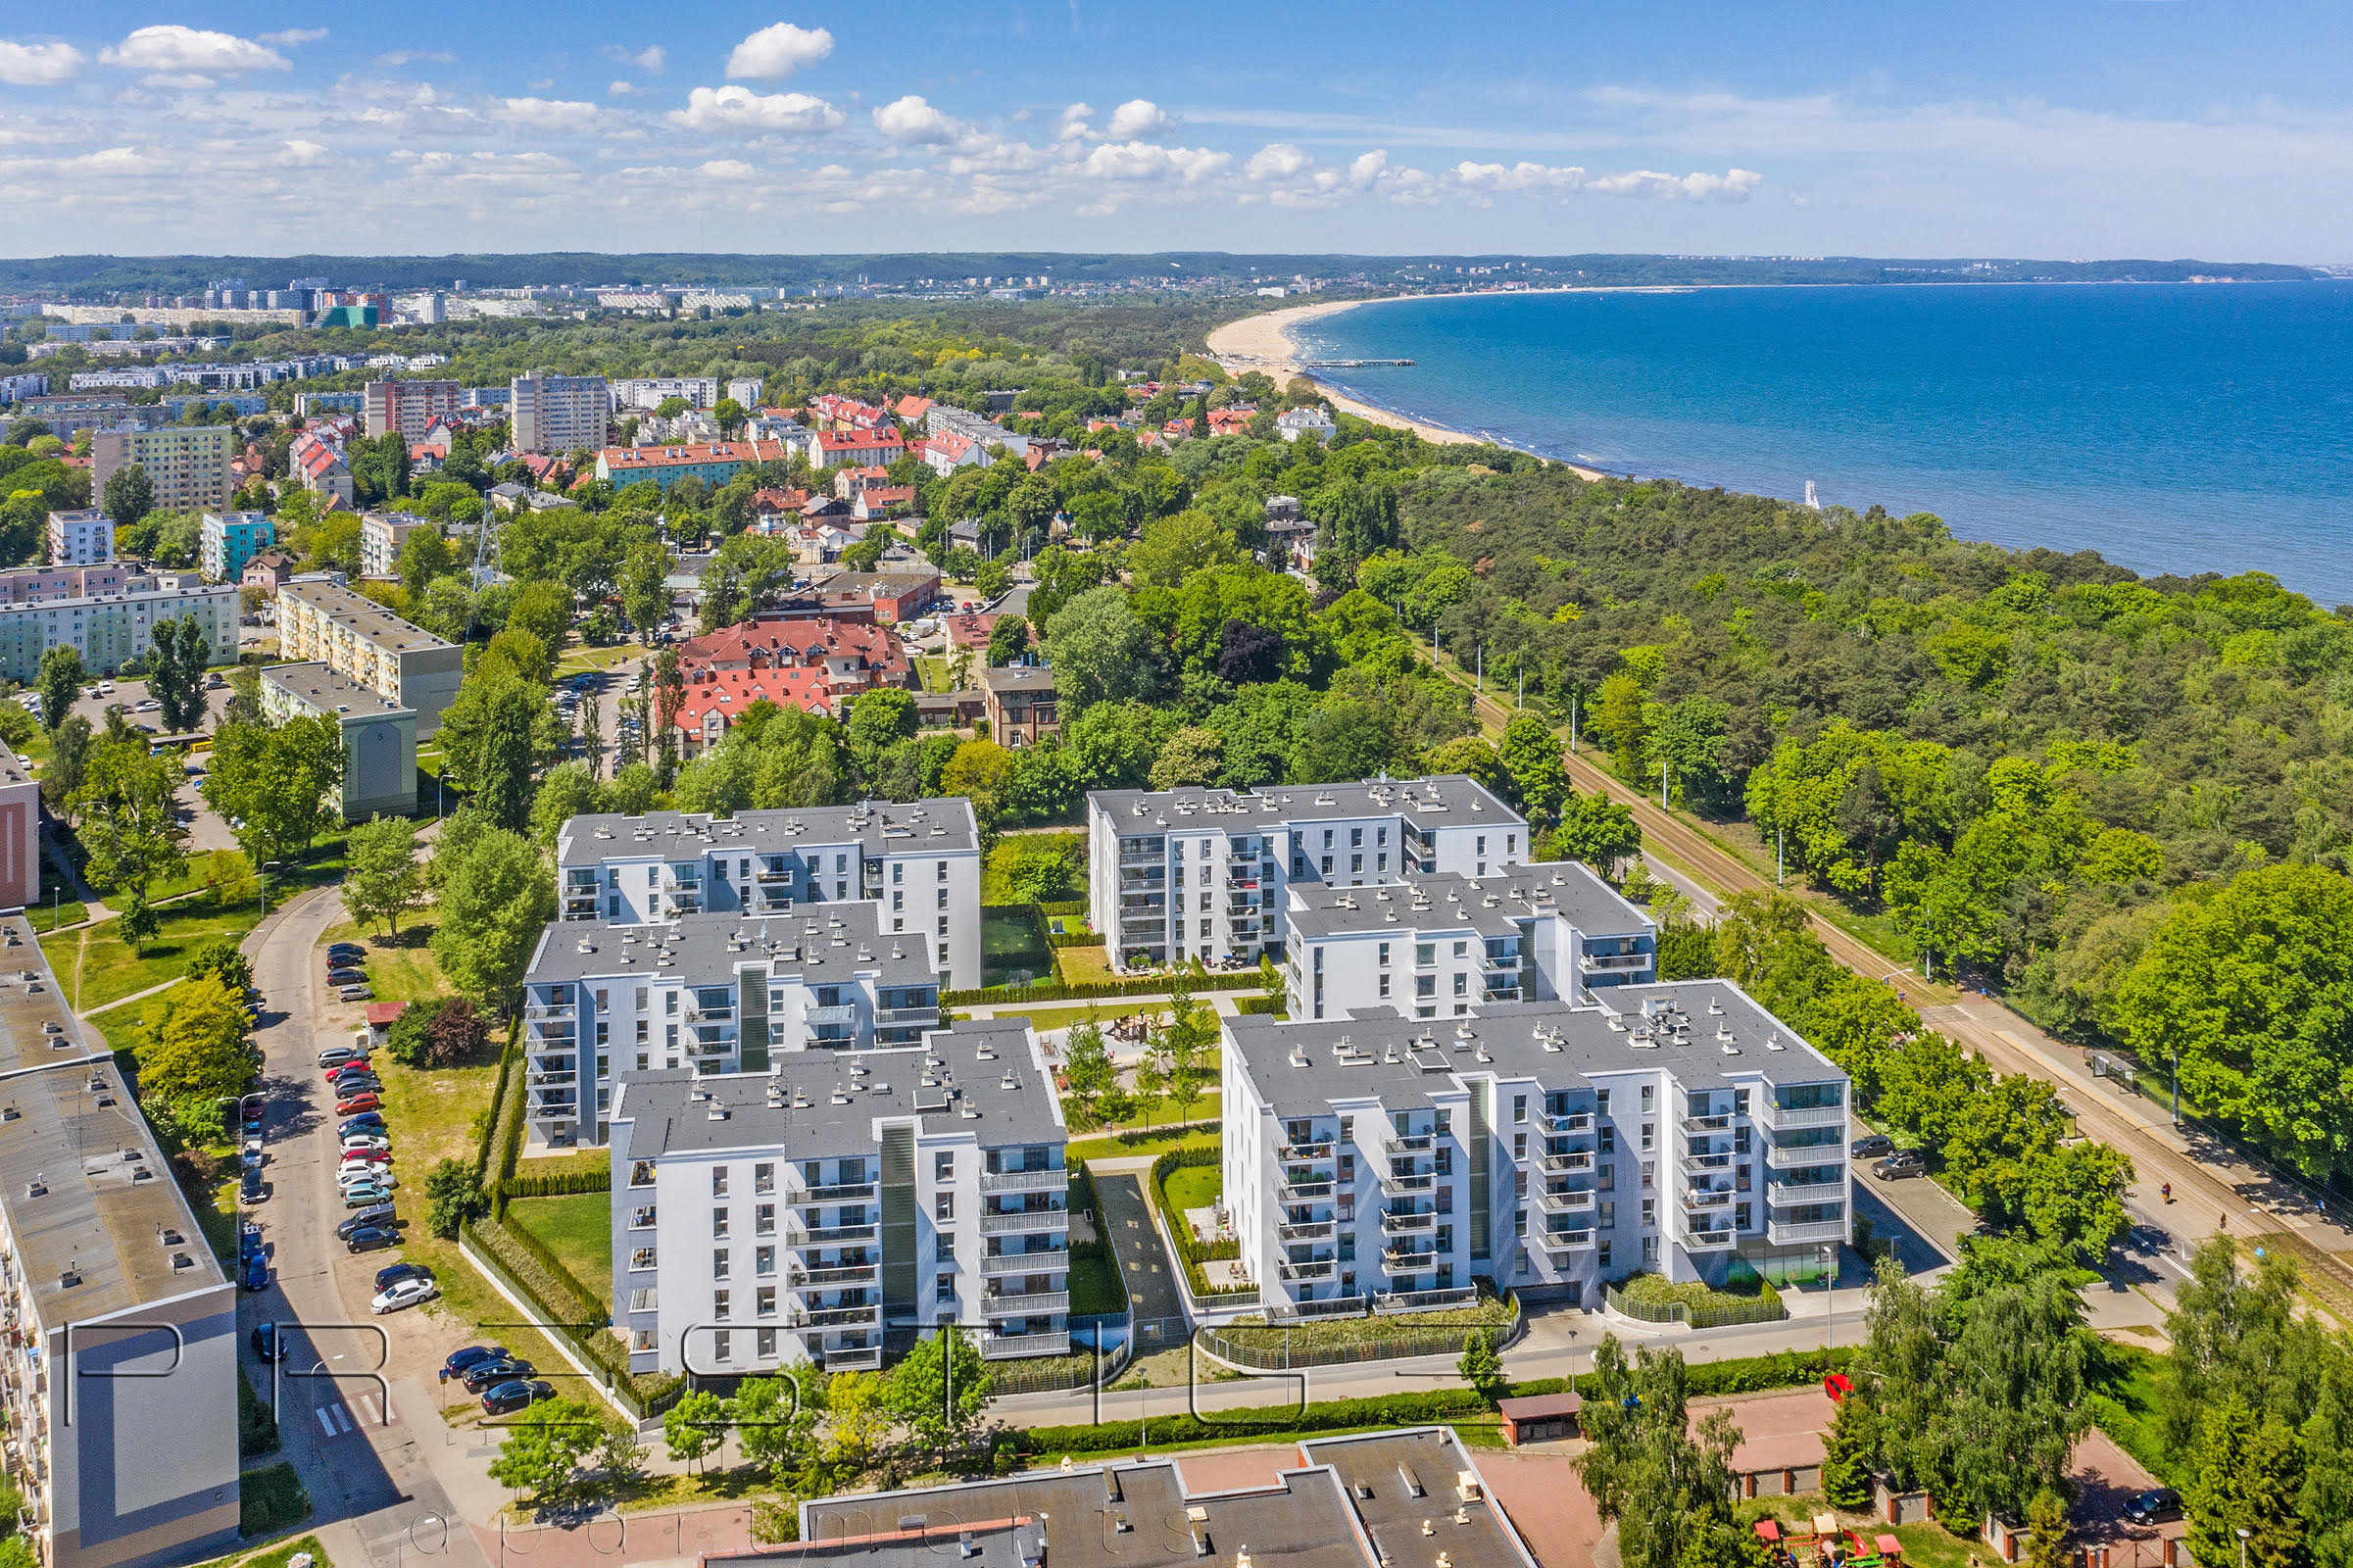 Wynajem apartamentów Gdańsk - PropertyStaging